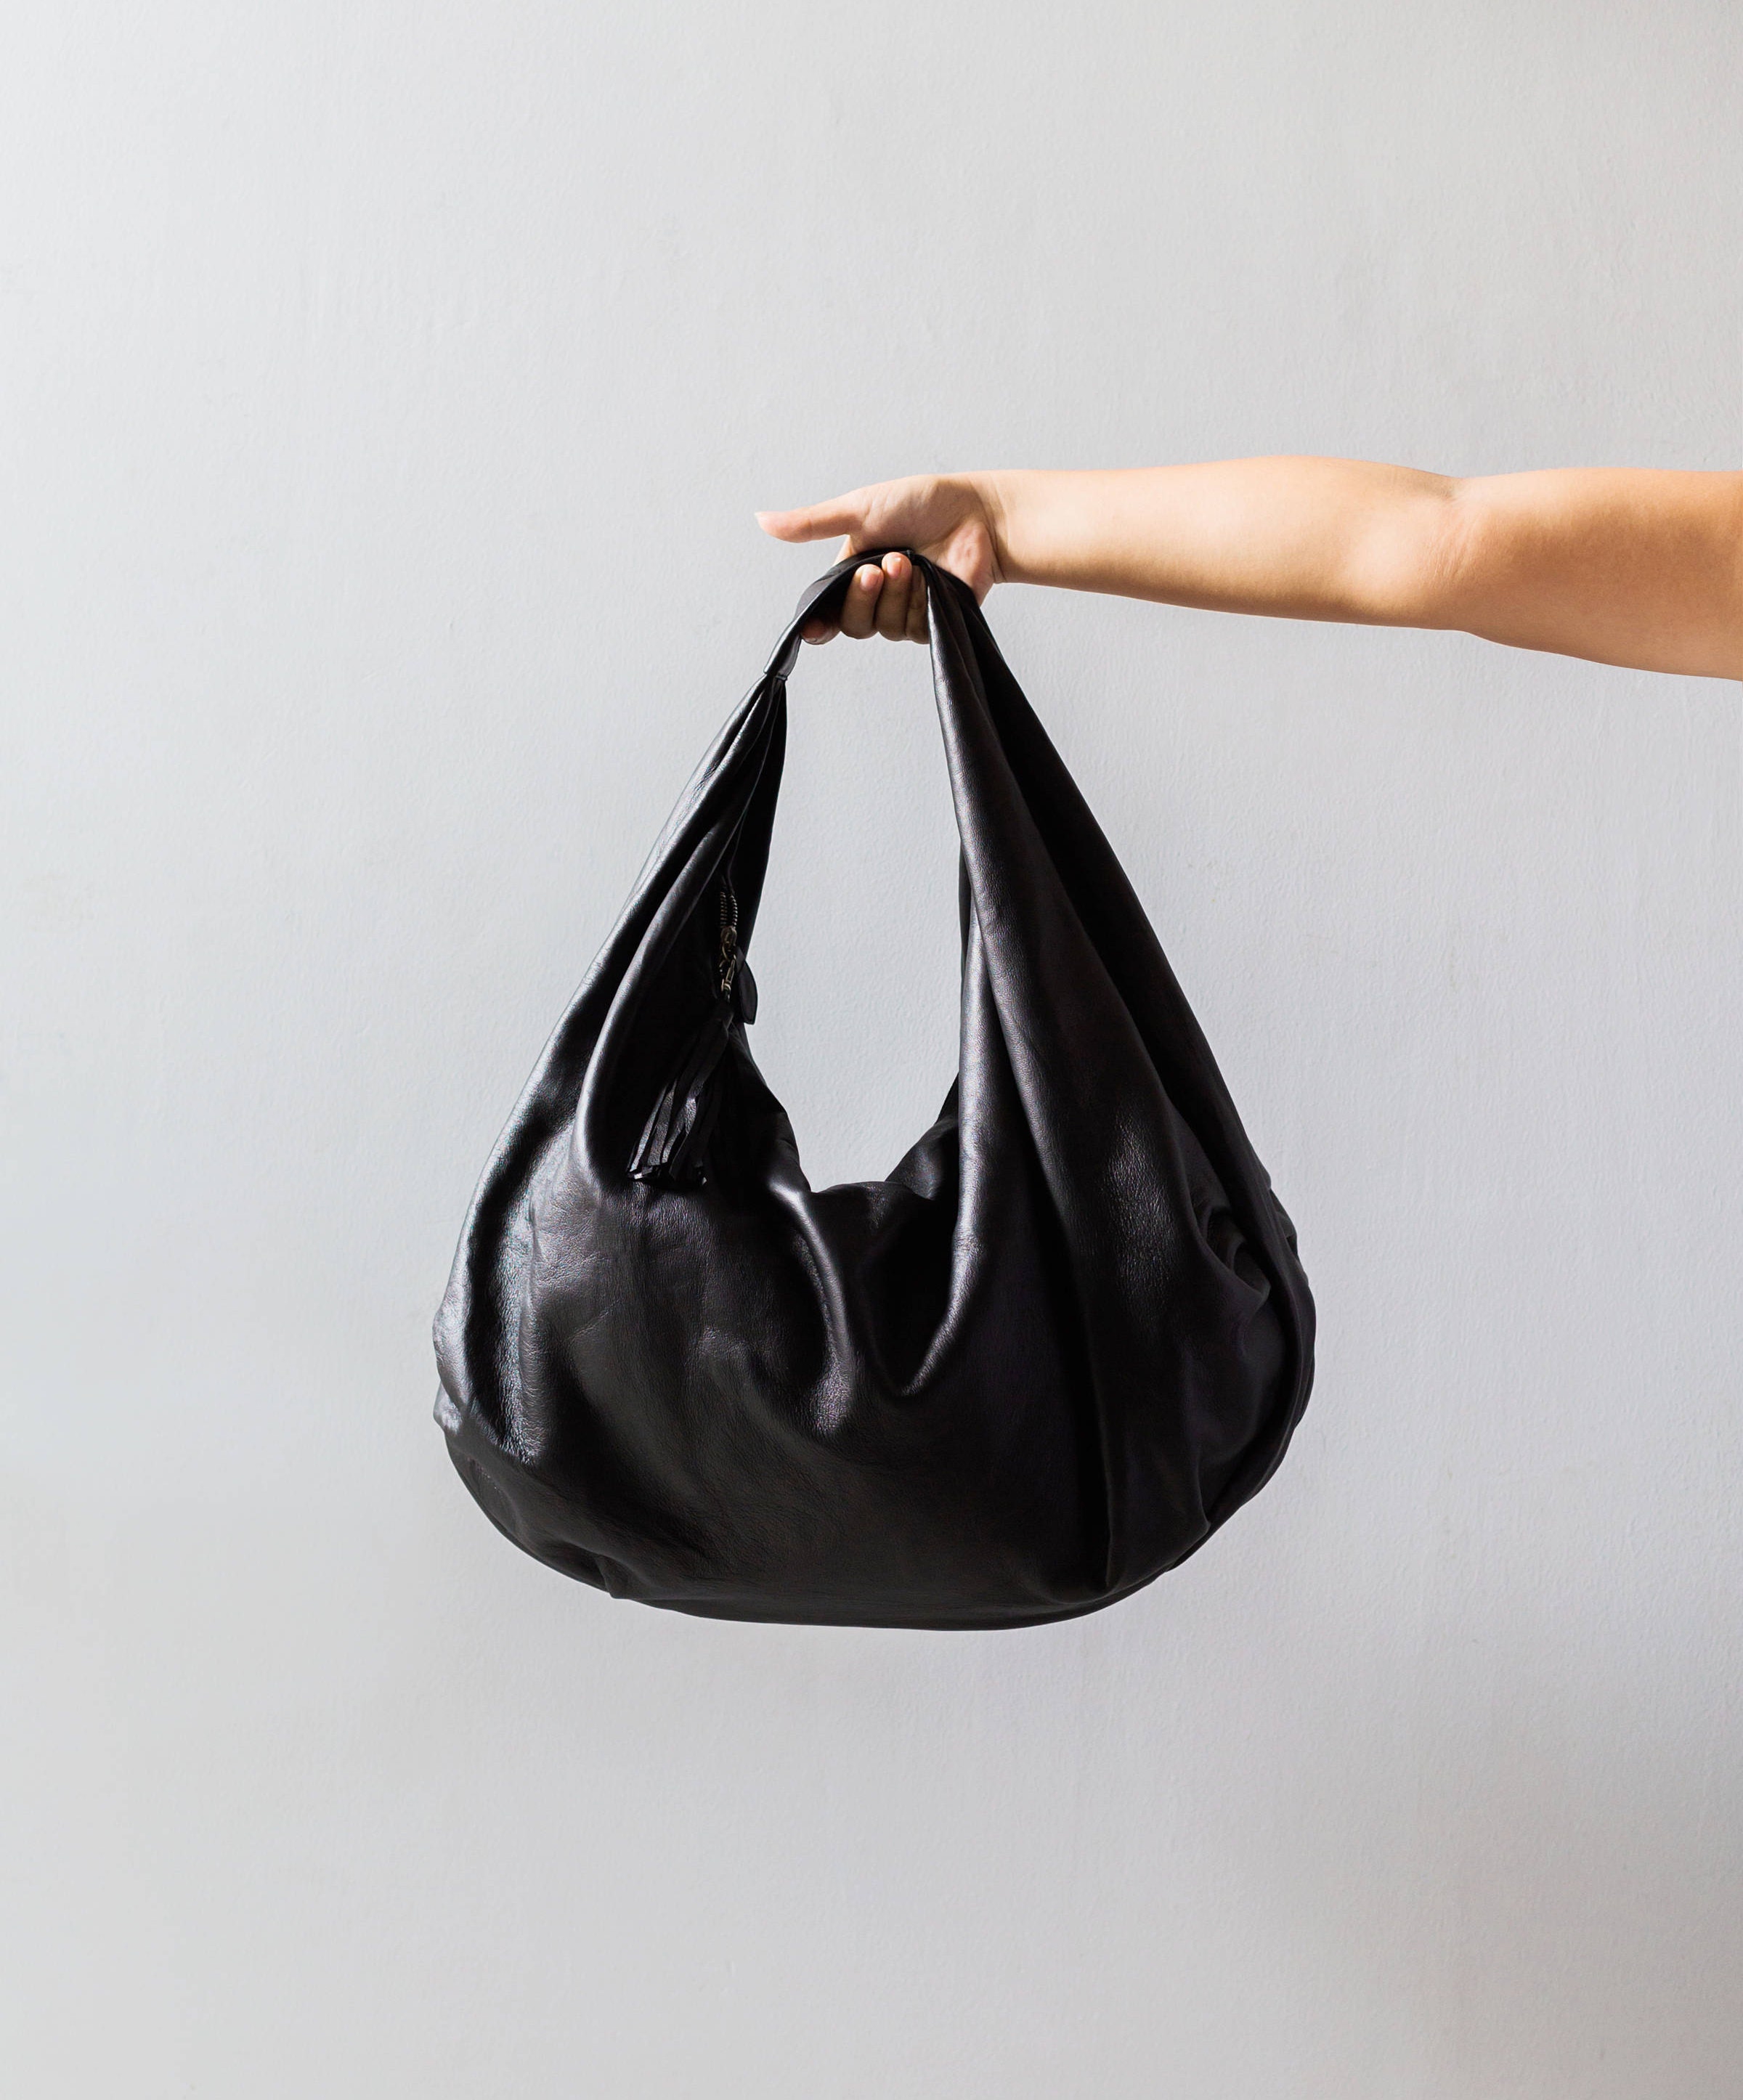 BLACK Large hobo Bag black soft leather hobo bag leather | Etsy